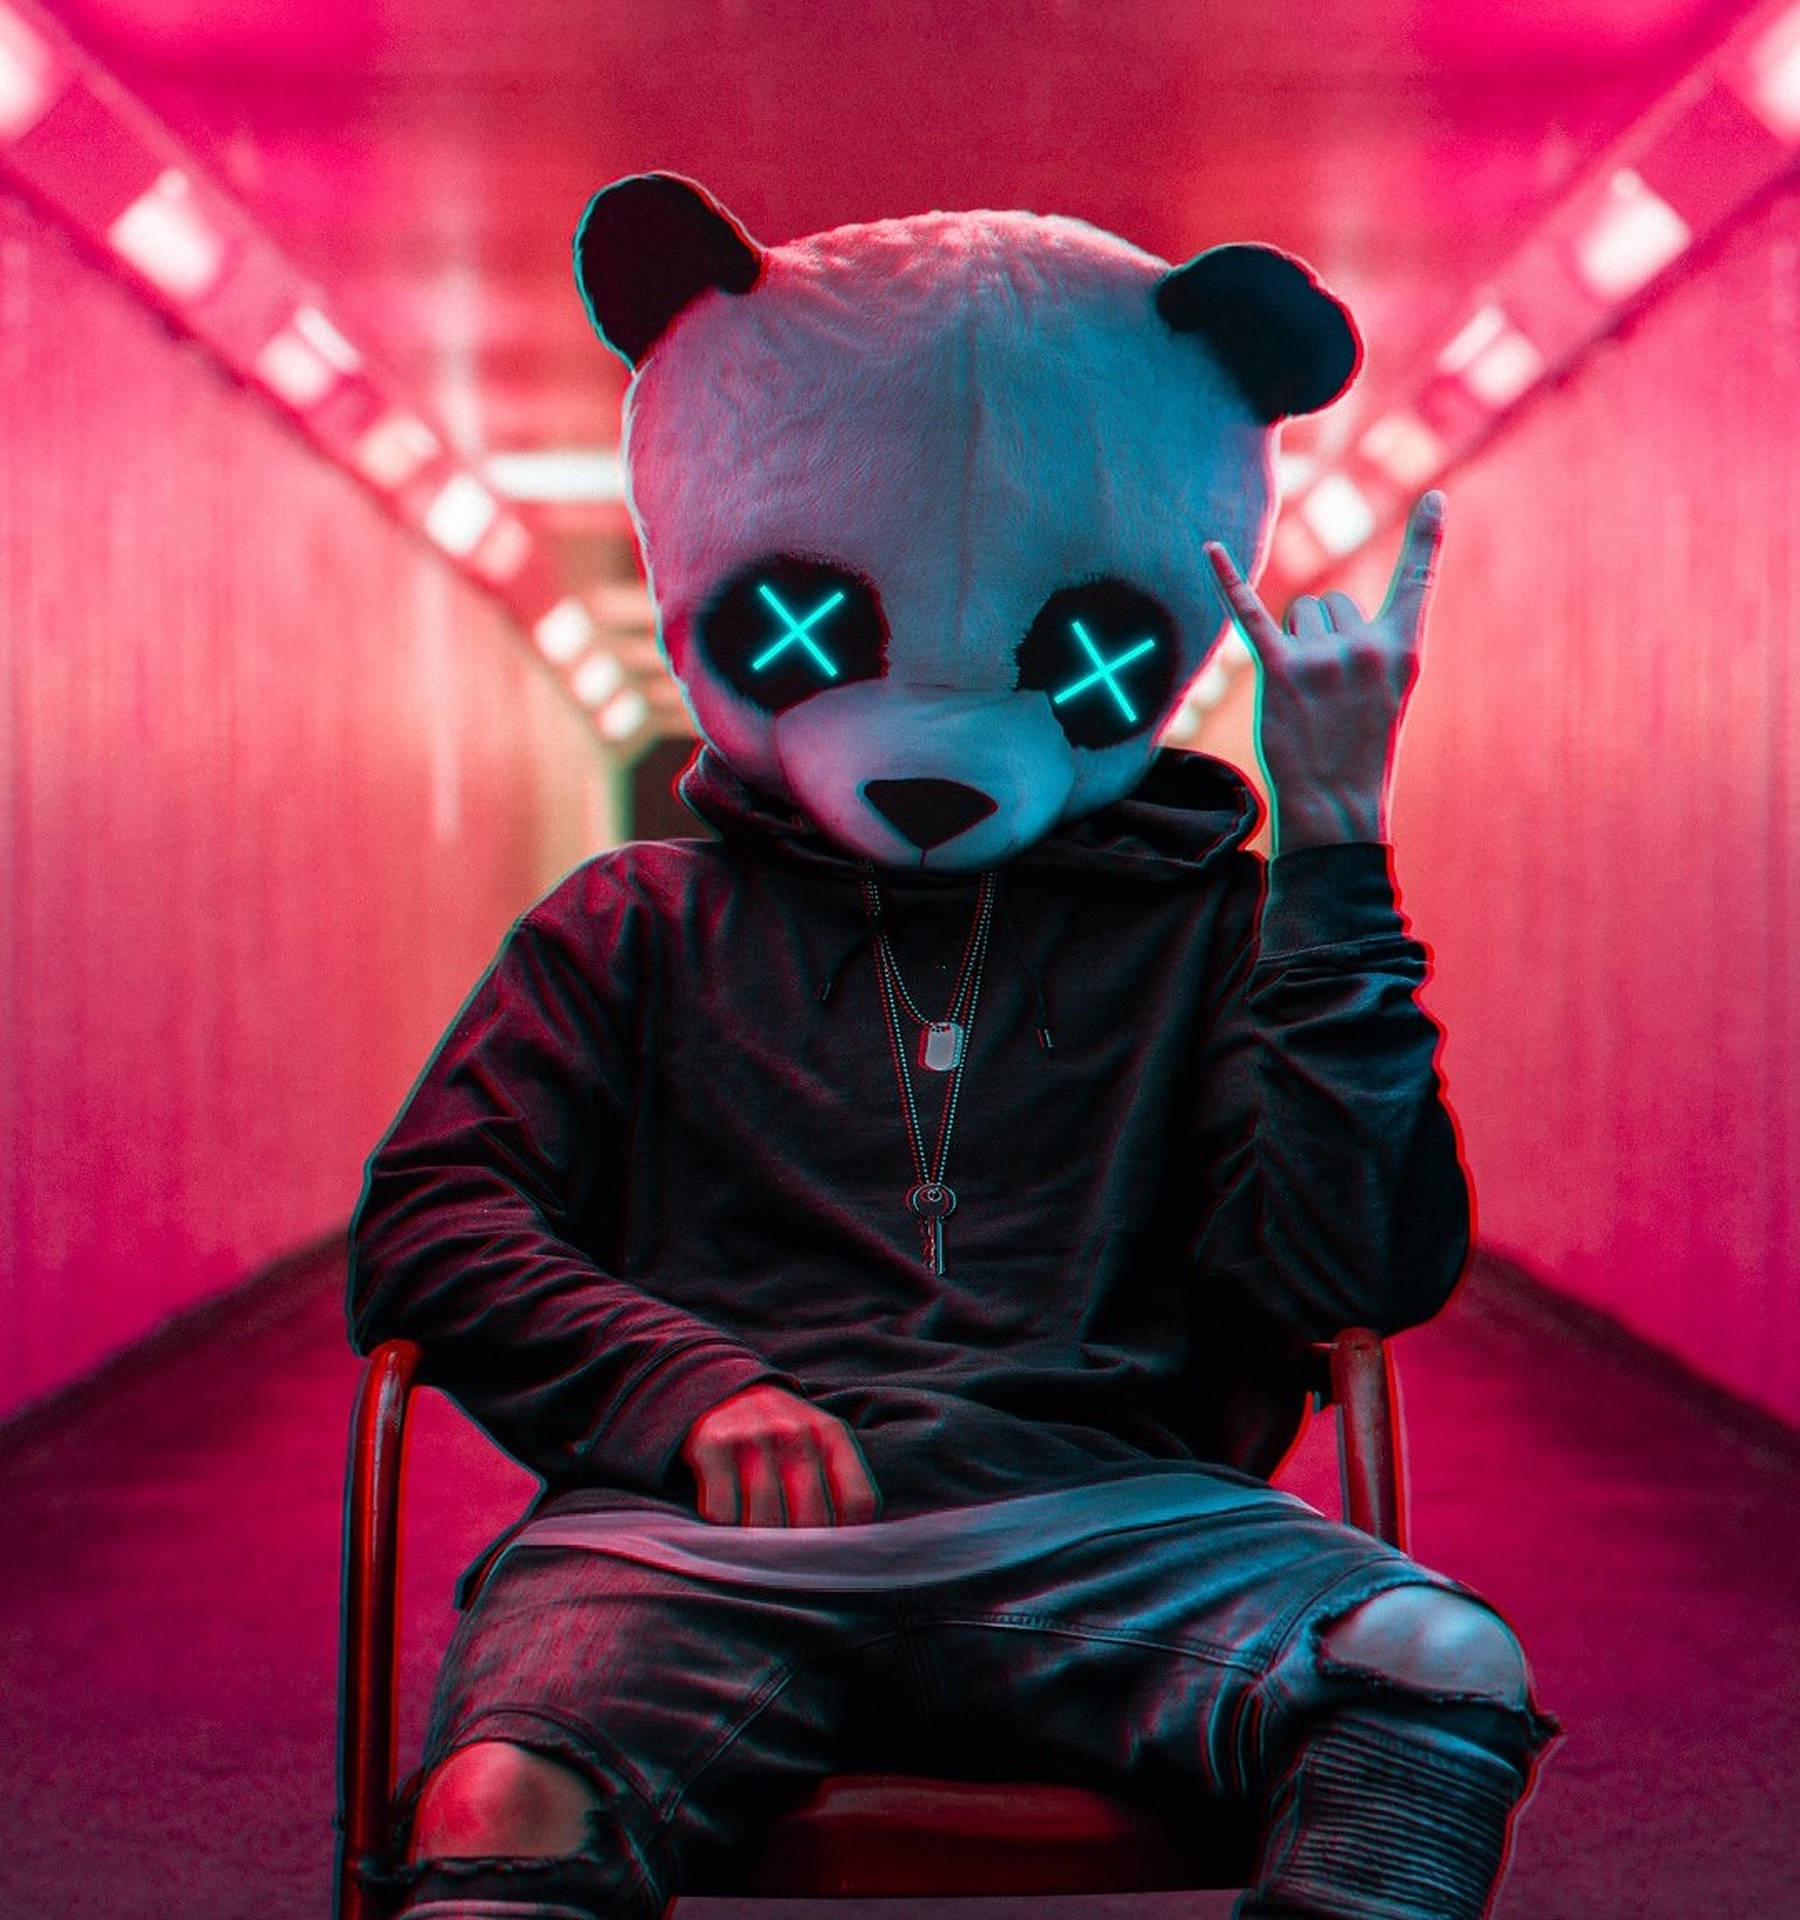 Stylish Panda Man - Cool Profile Picture Background